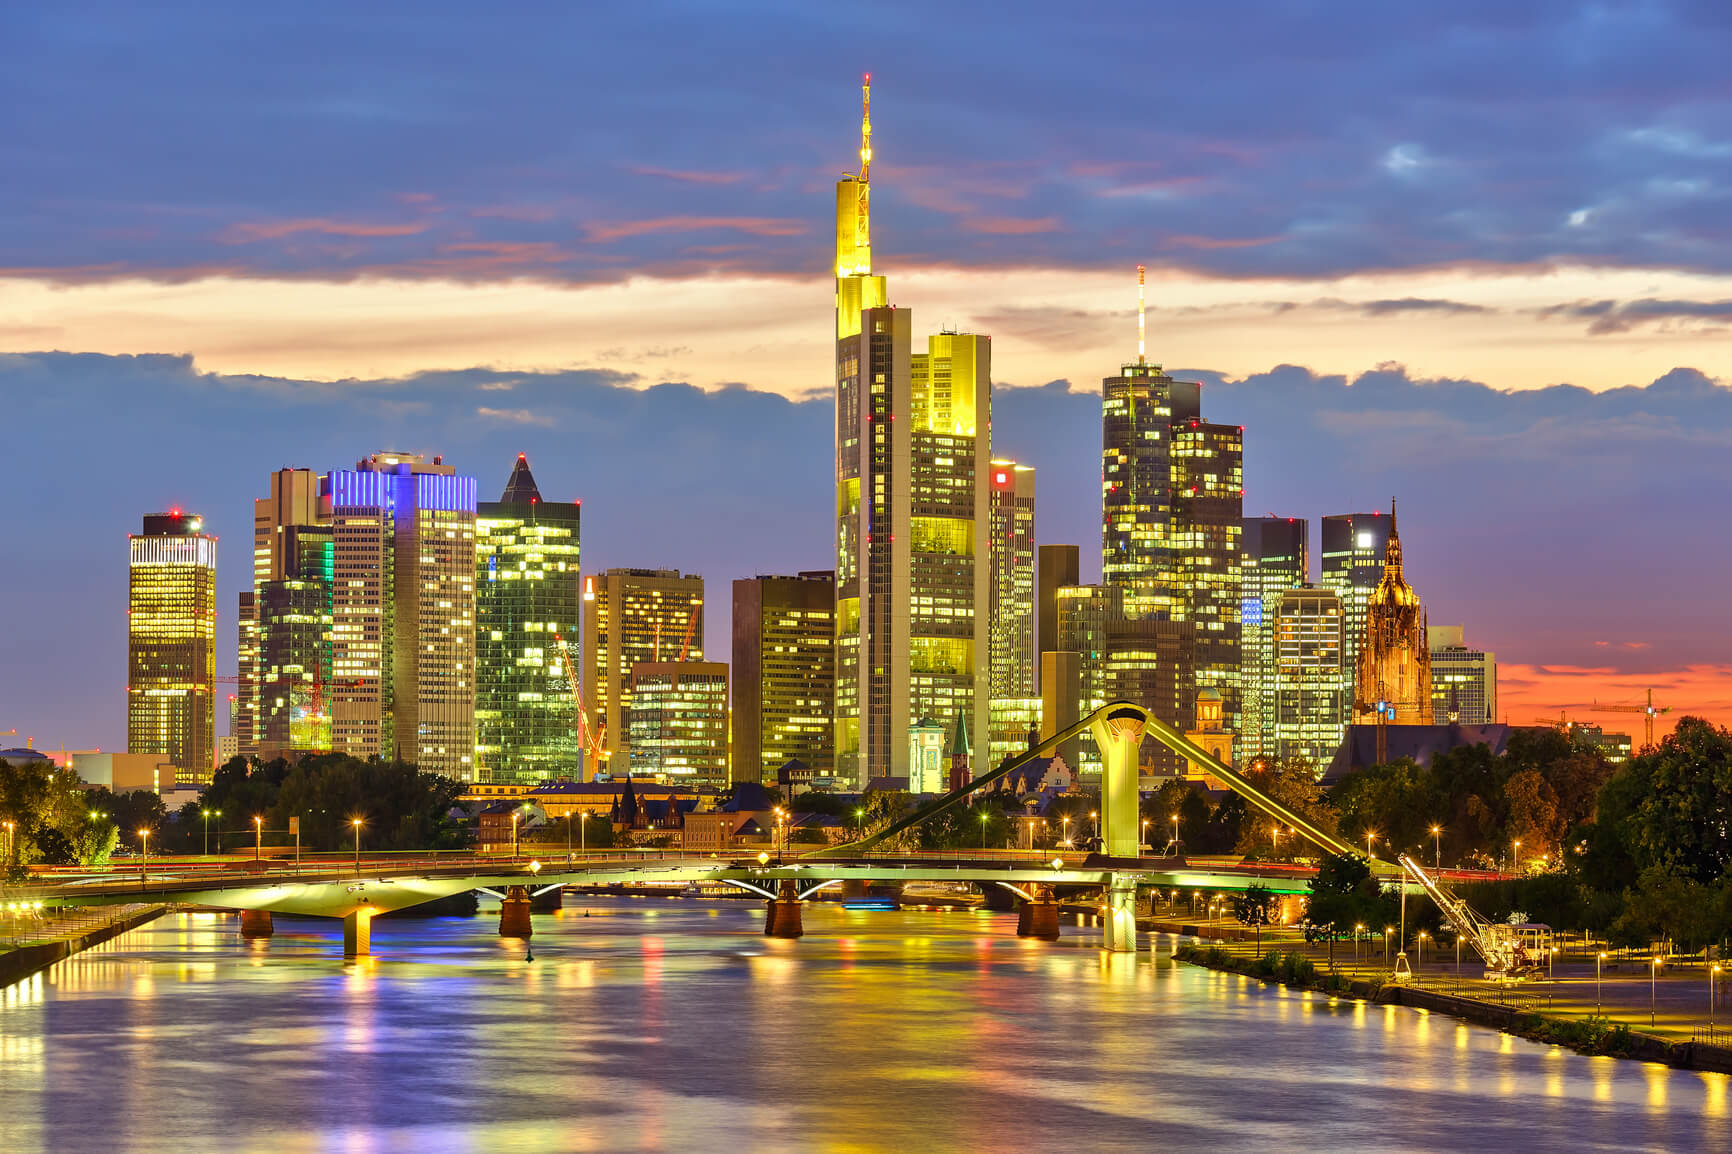 Flight deals from Bangkok, Thailand to Frankfurt, Germany | Secret Flying